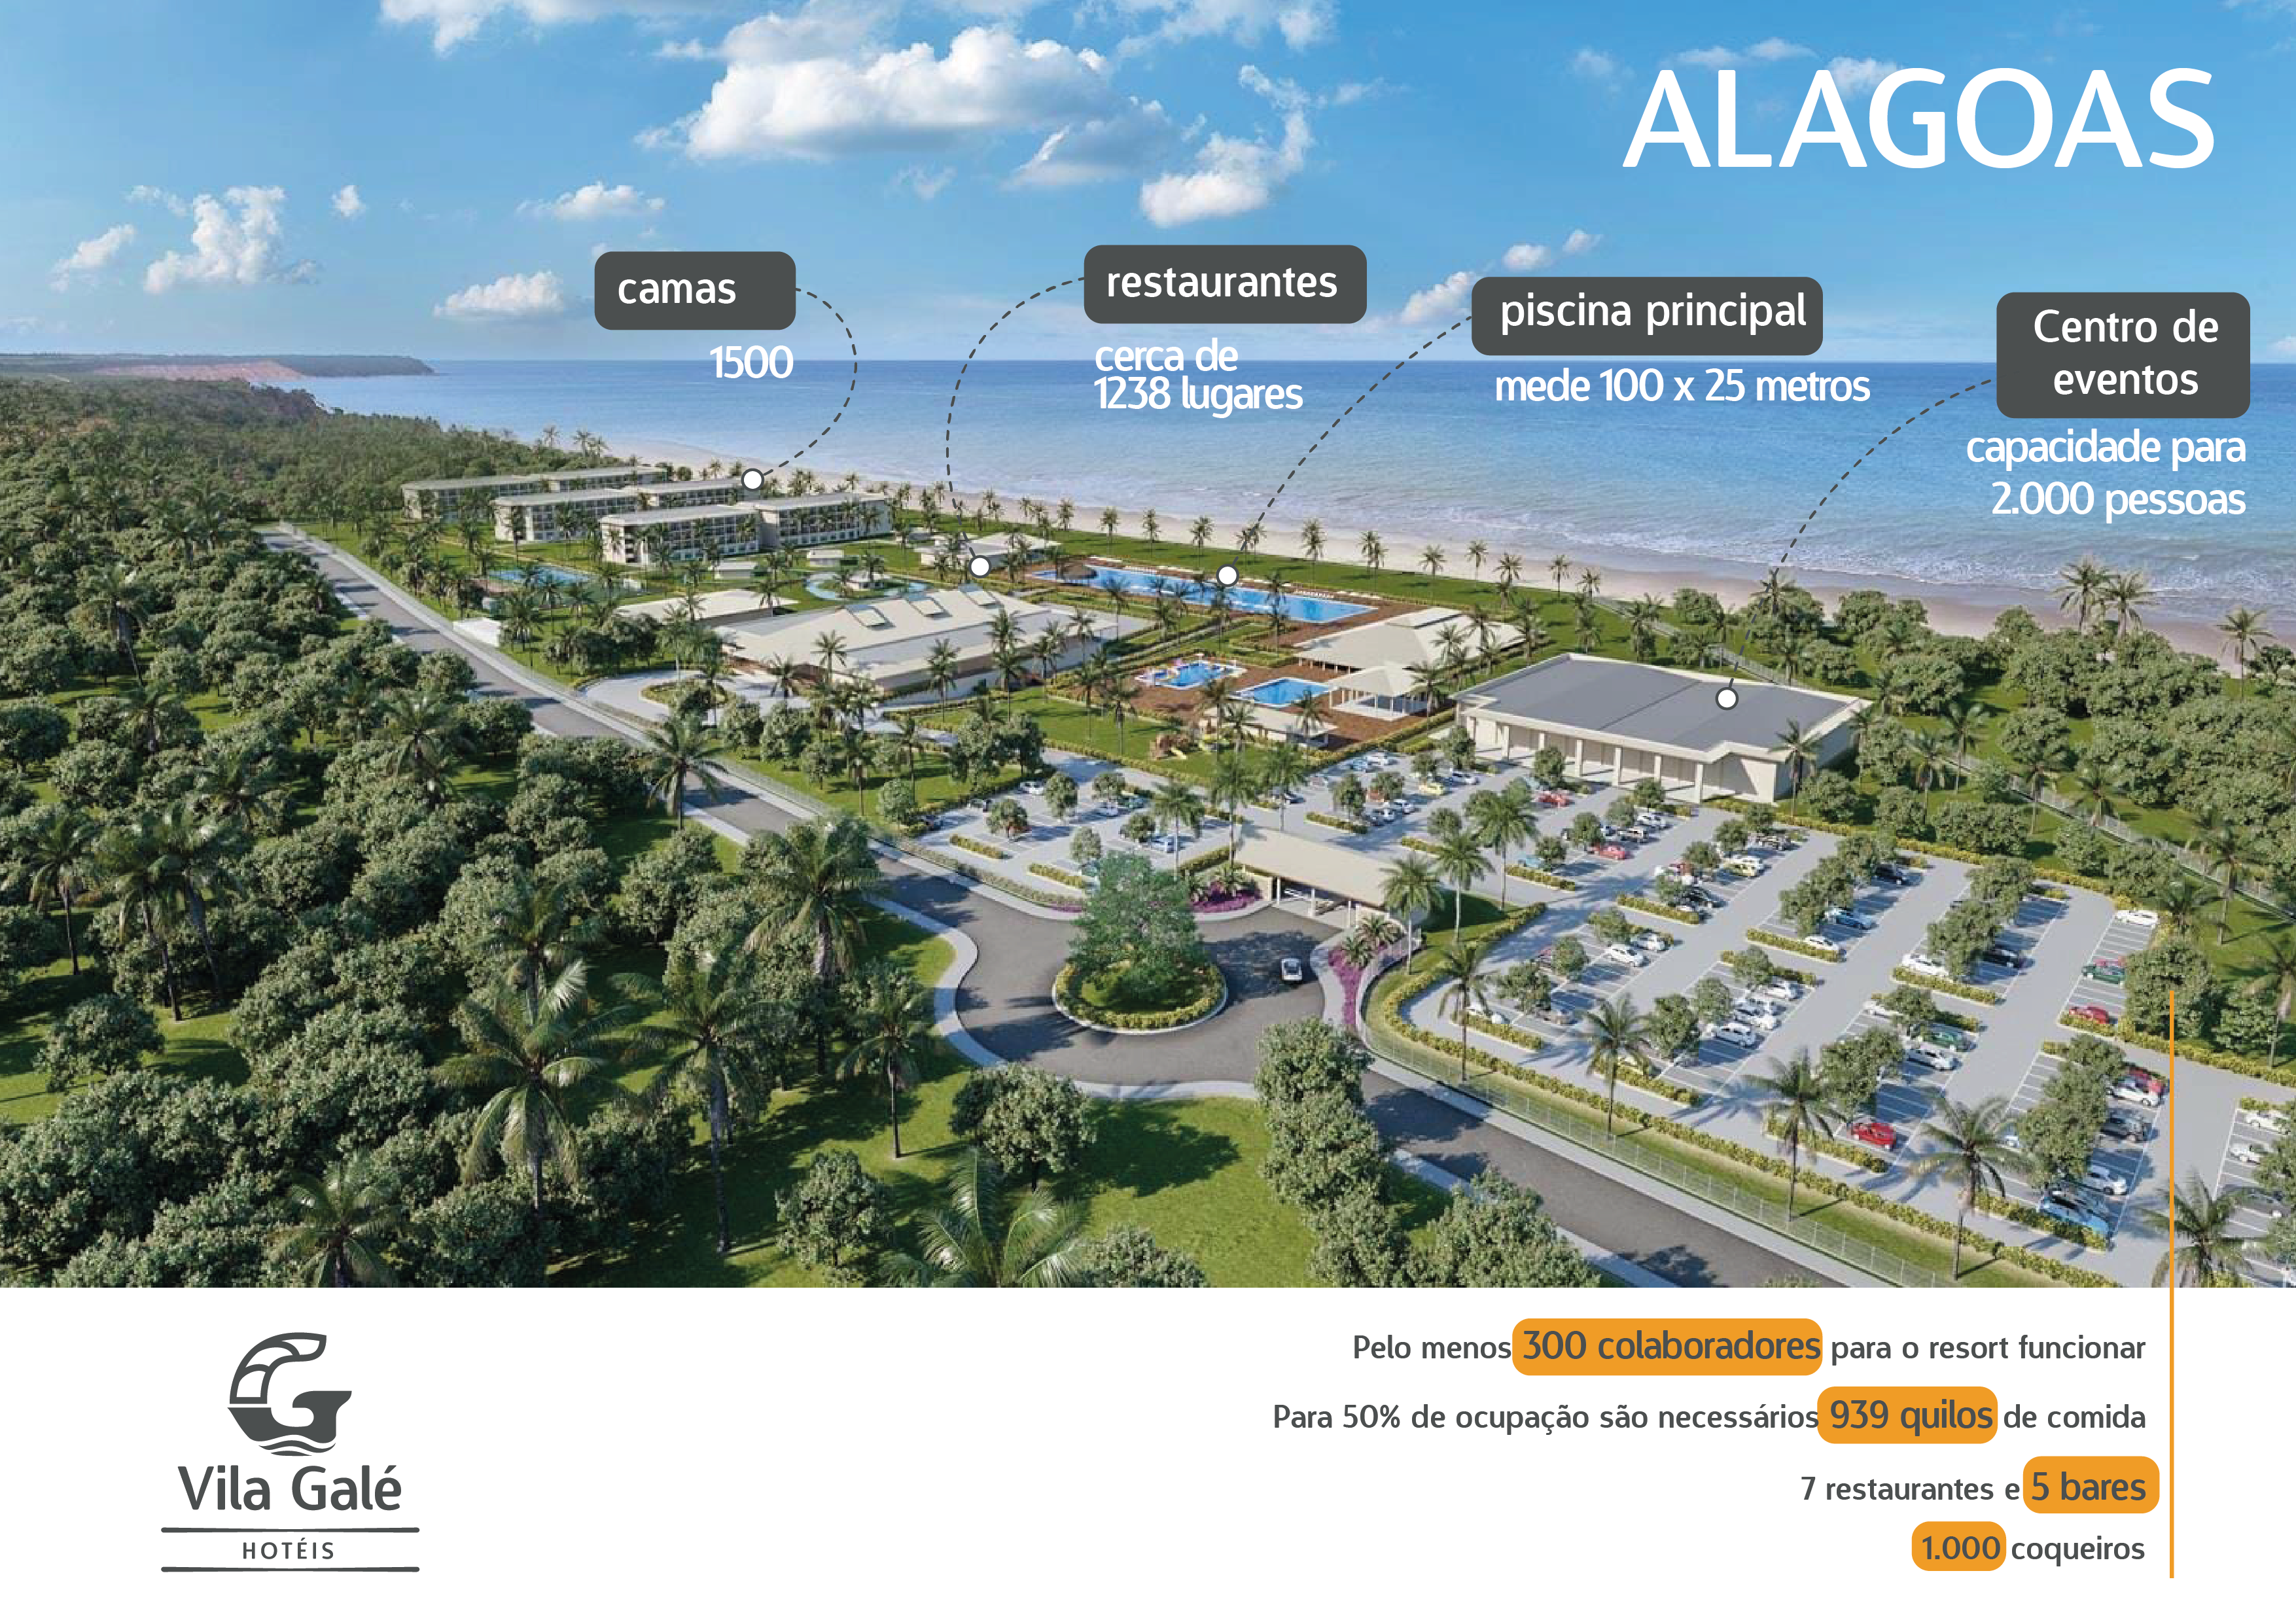 Vila Galé inaugura mega resort em Alagoas com padrão internacional 1